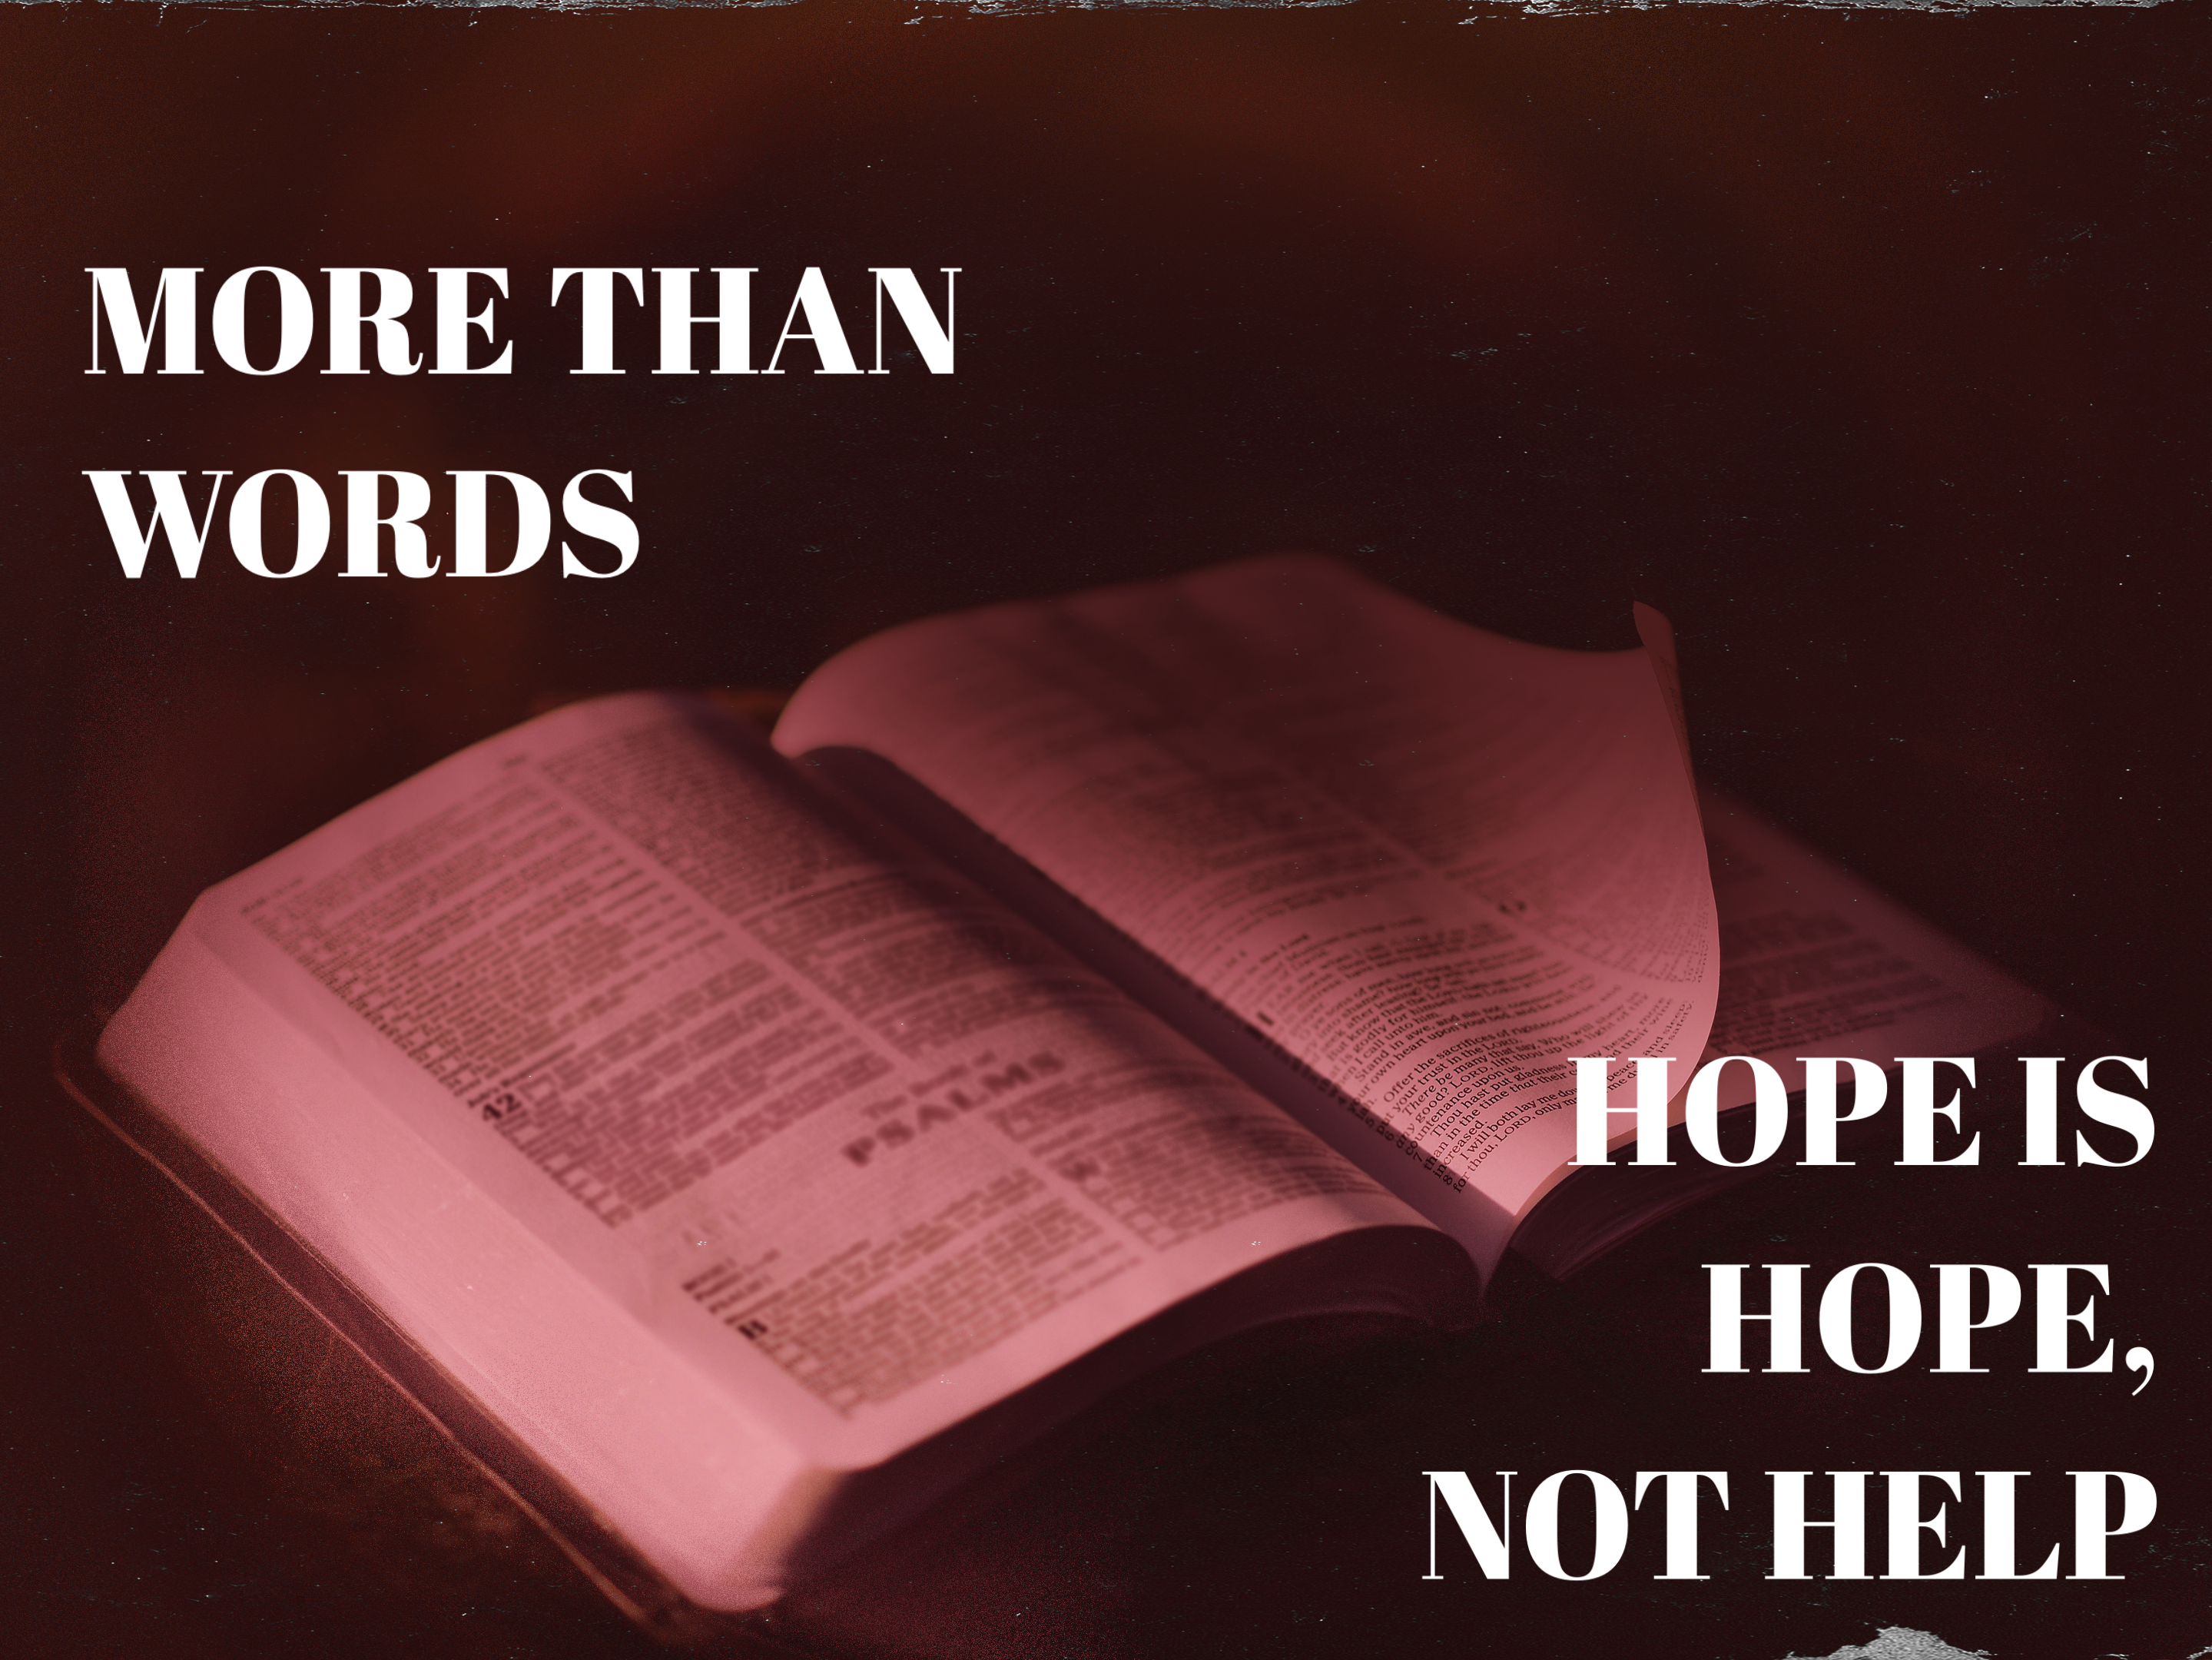 5 Words: Hope is Hope, Not Help